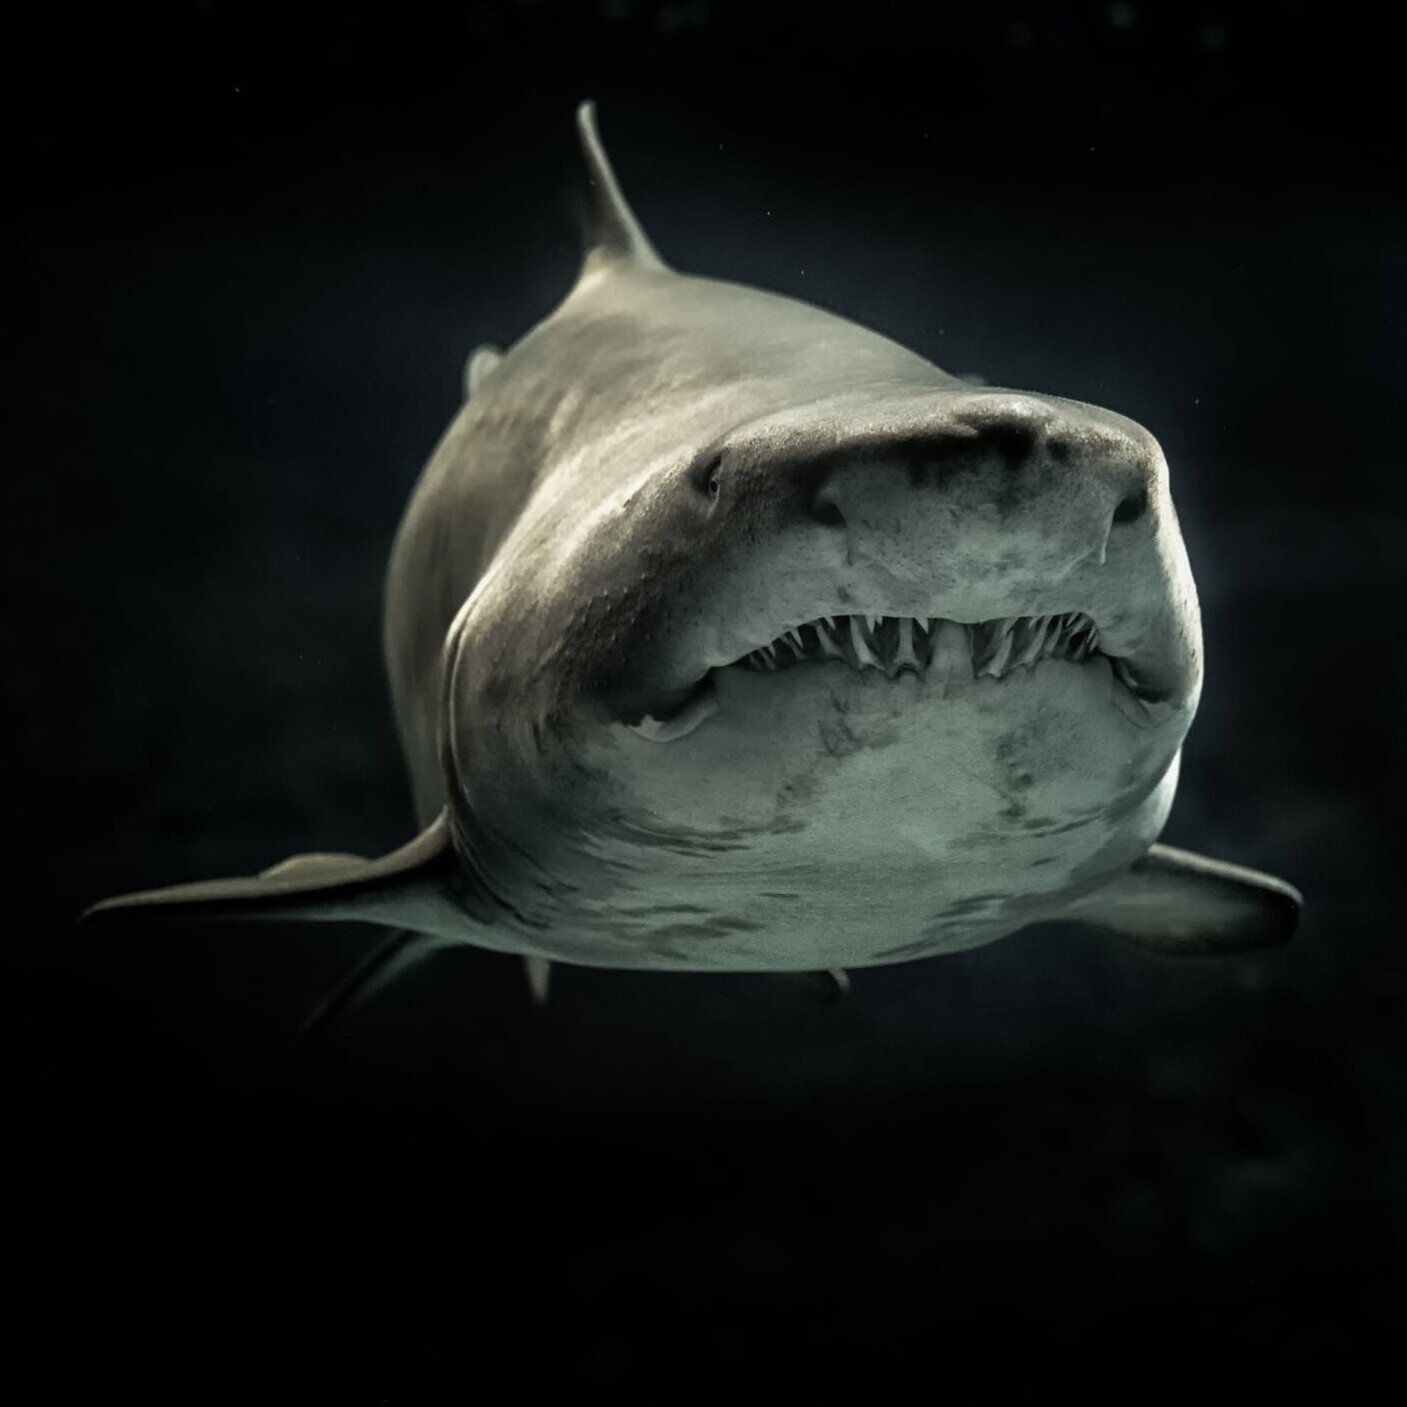 Shark.jpg